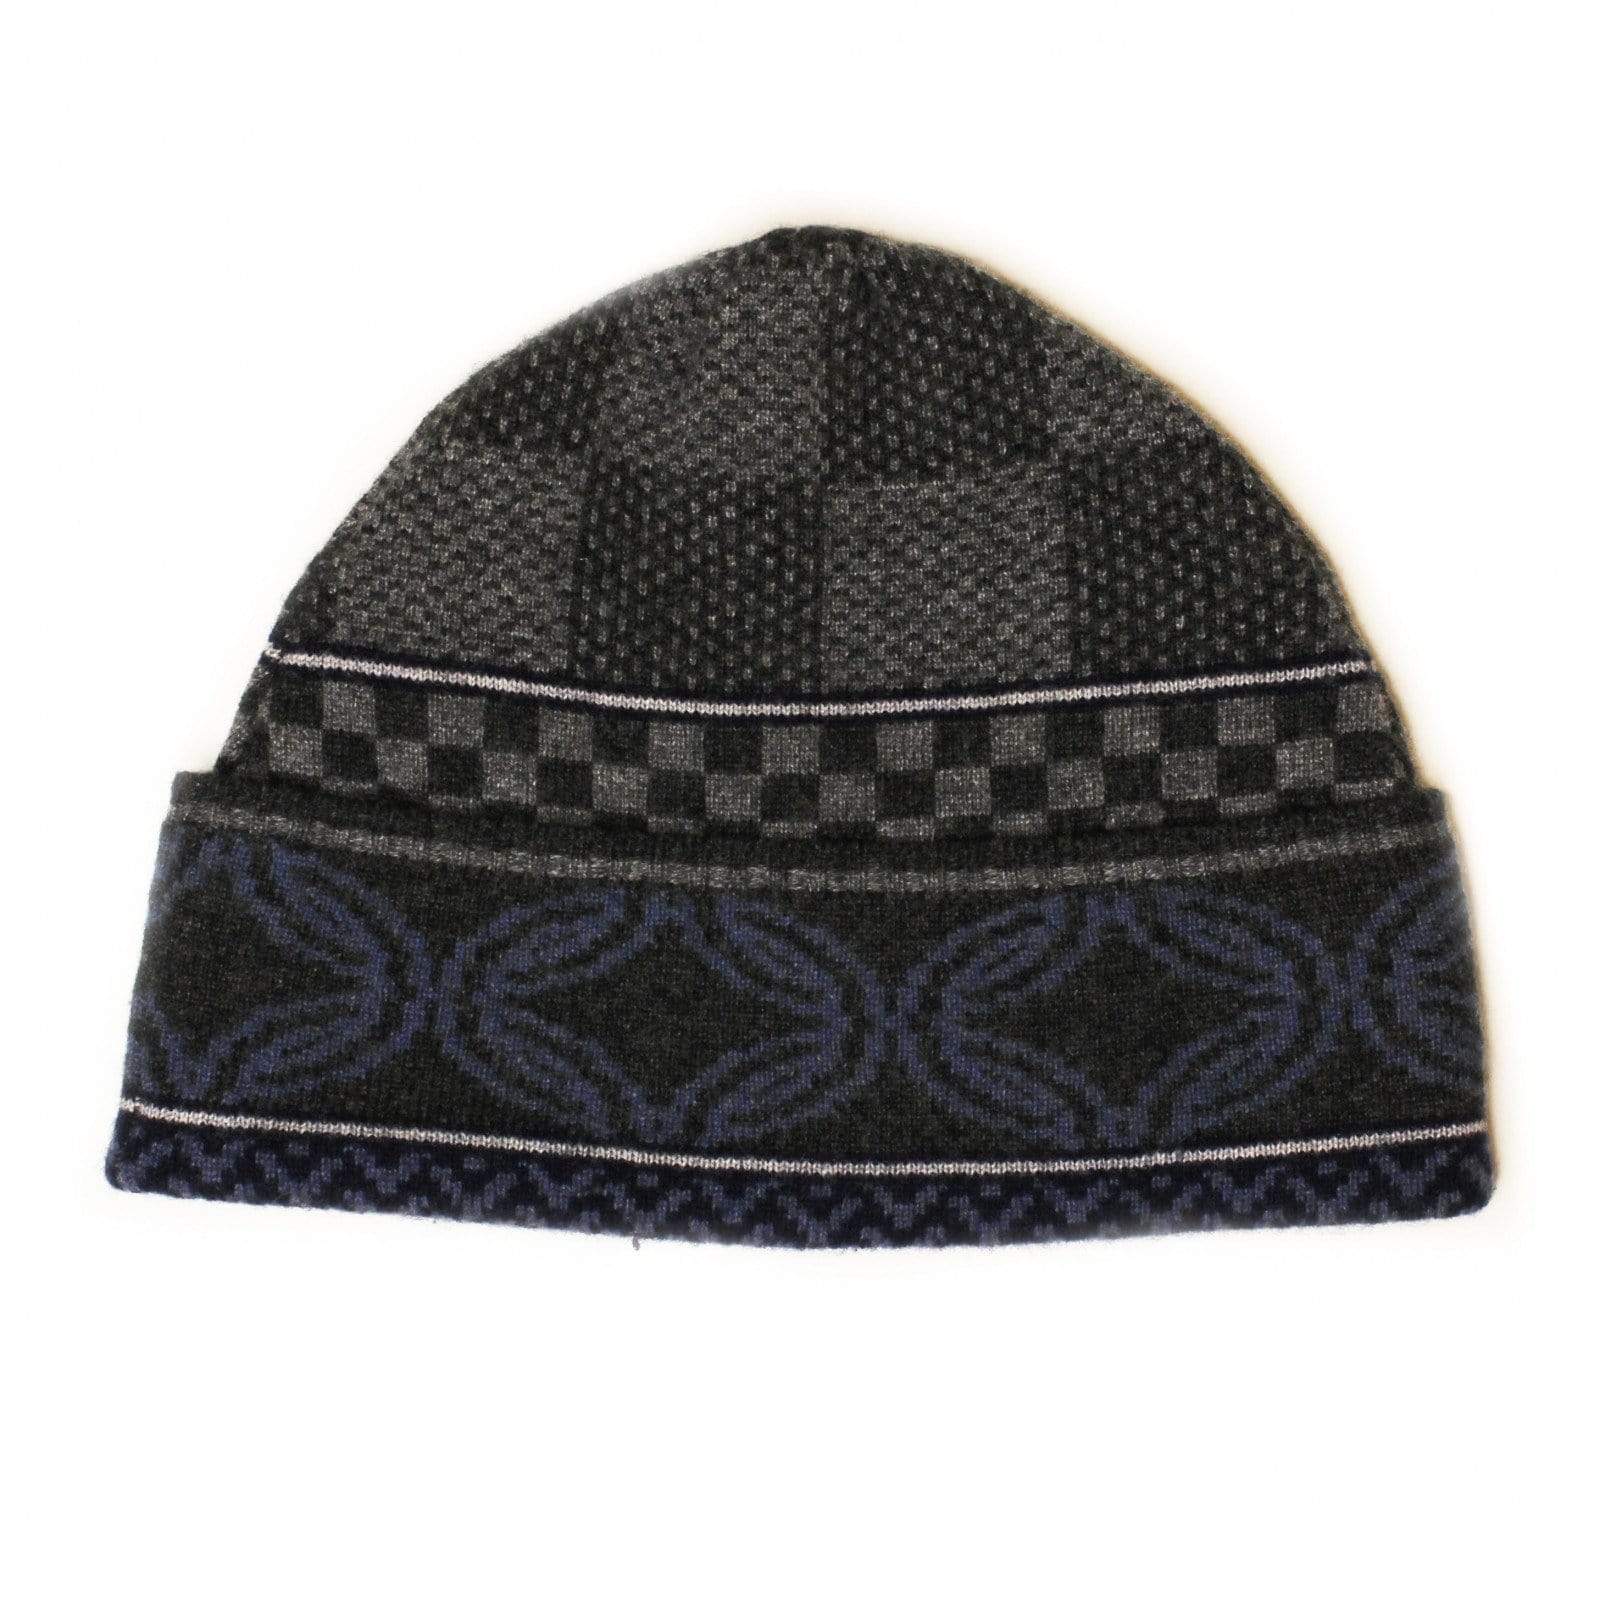 Louis Vuitton Bonnet Lv Ahead M76593 Beanie Cashmere Blue knit hat